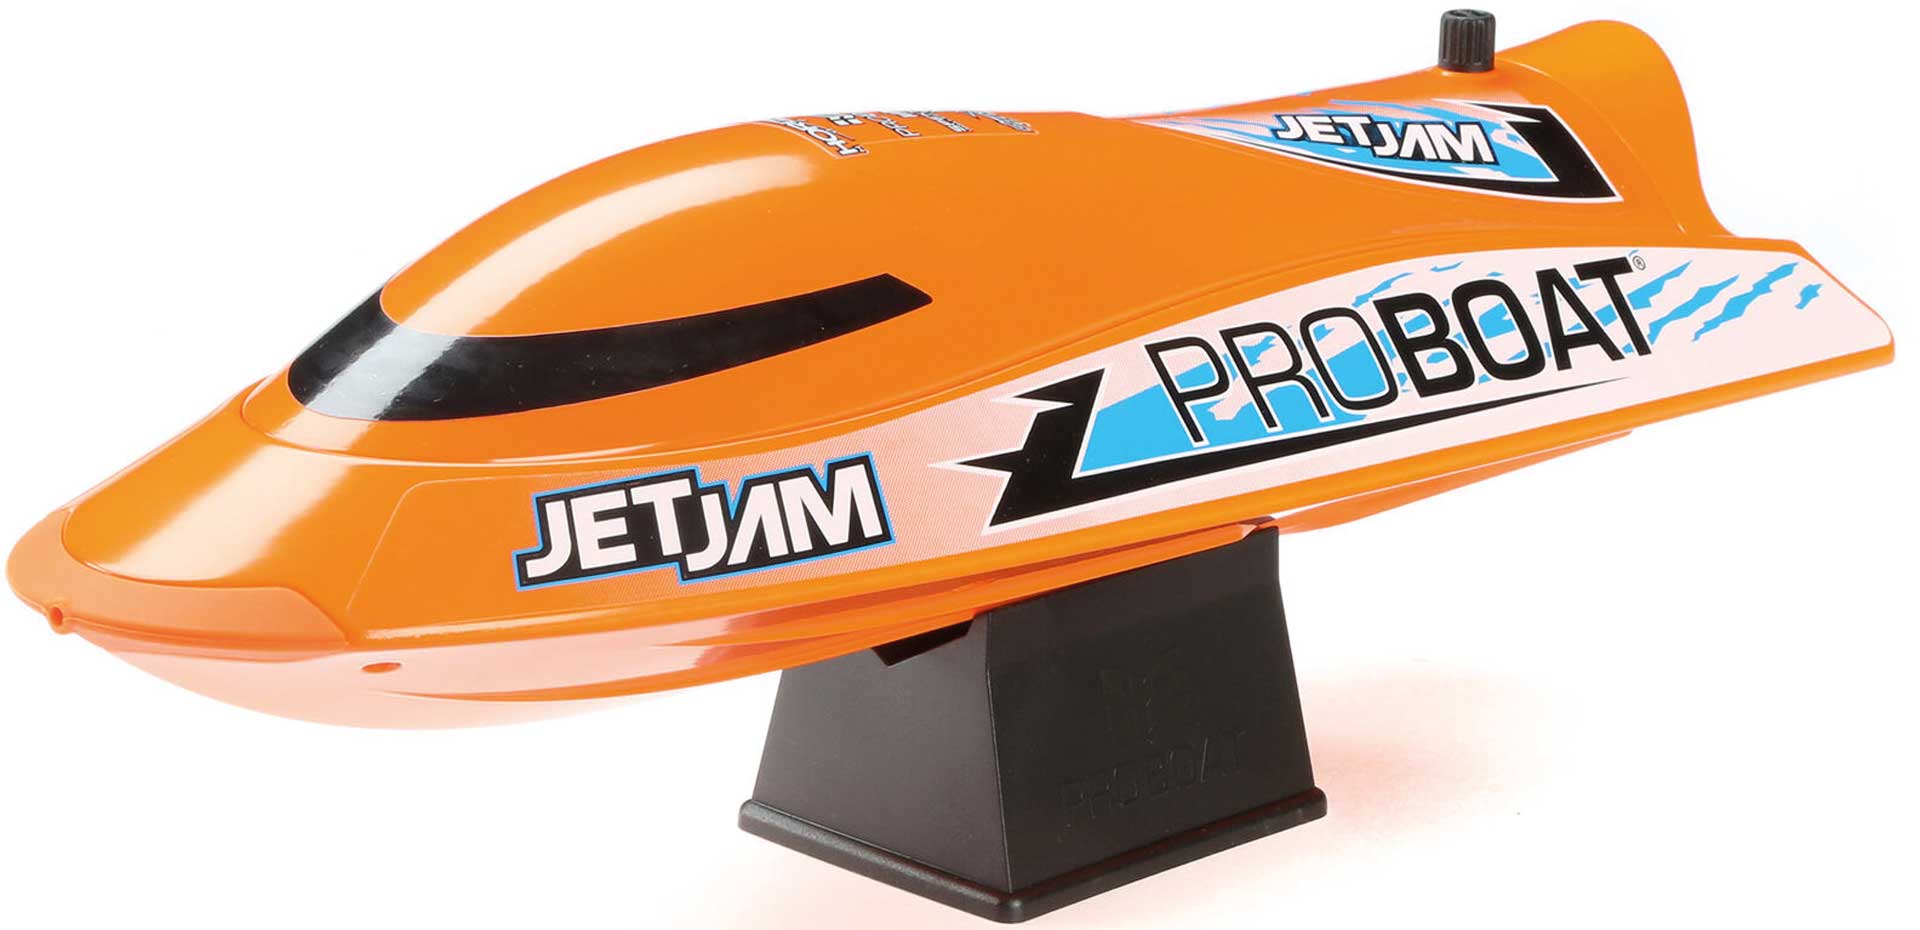 PROBOAT Jet Jam 12" Pool Racer Brushed Orange RTR